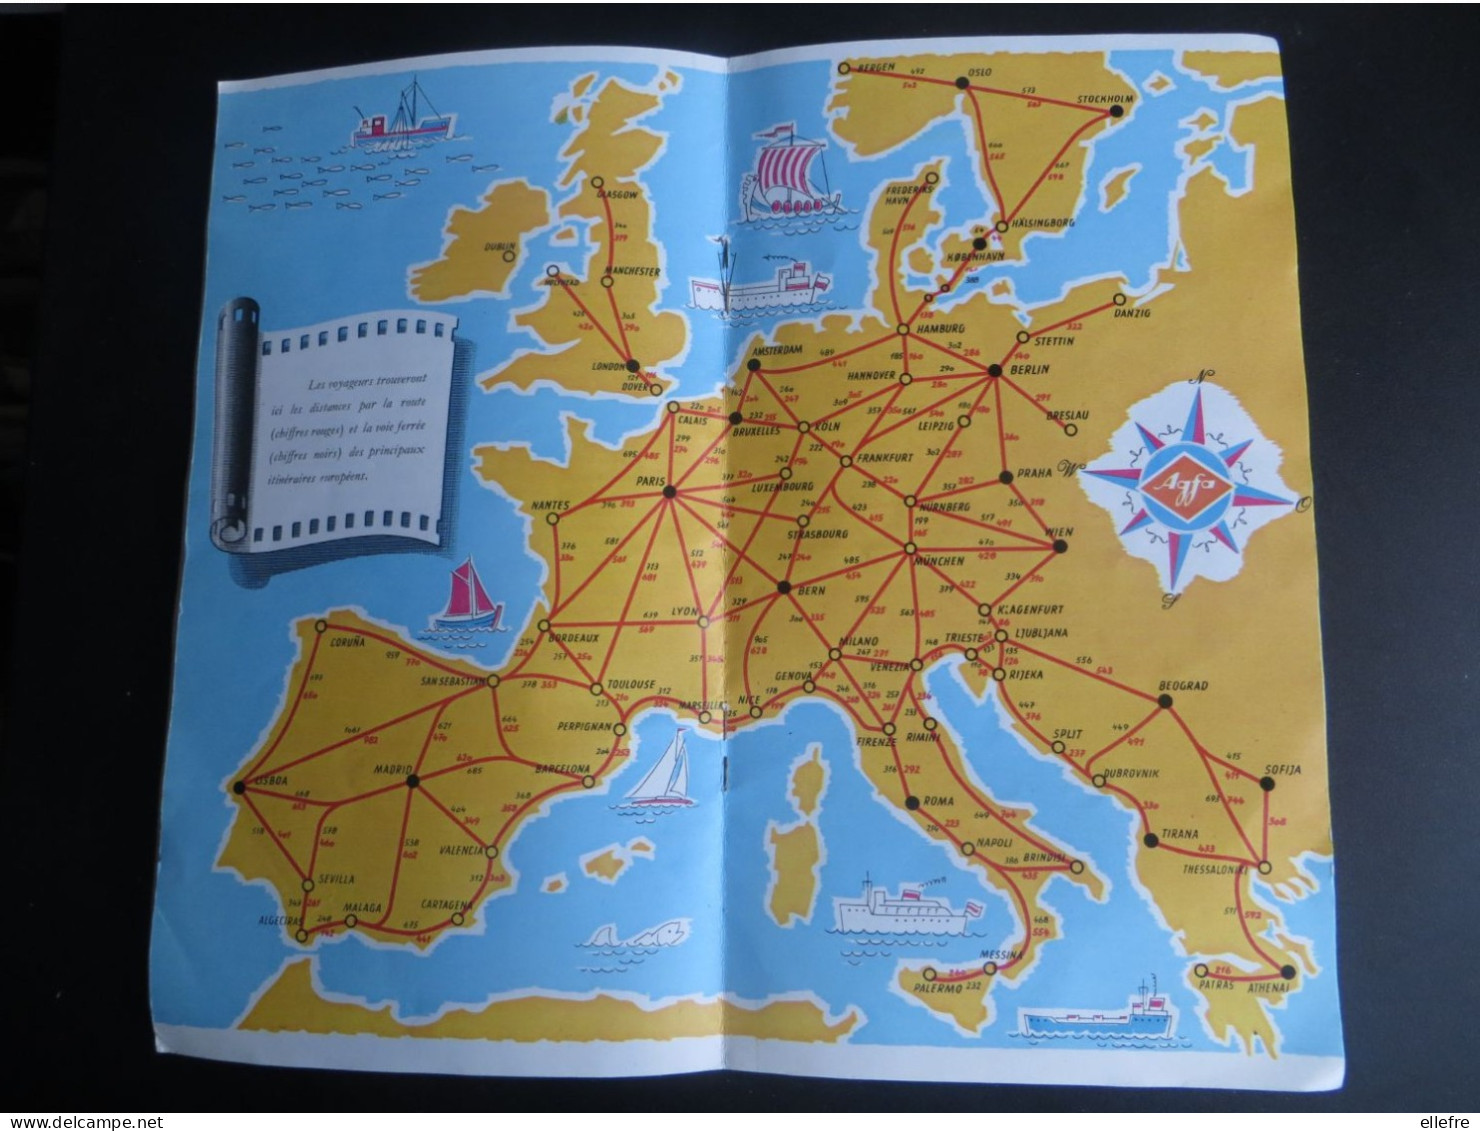 publicité appareil photo AGFA Photo Guide du voyageur européen touristiques appareil tampon photo des planches Deauville